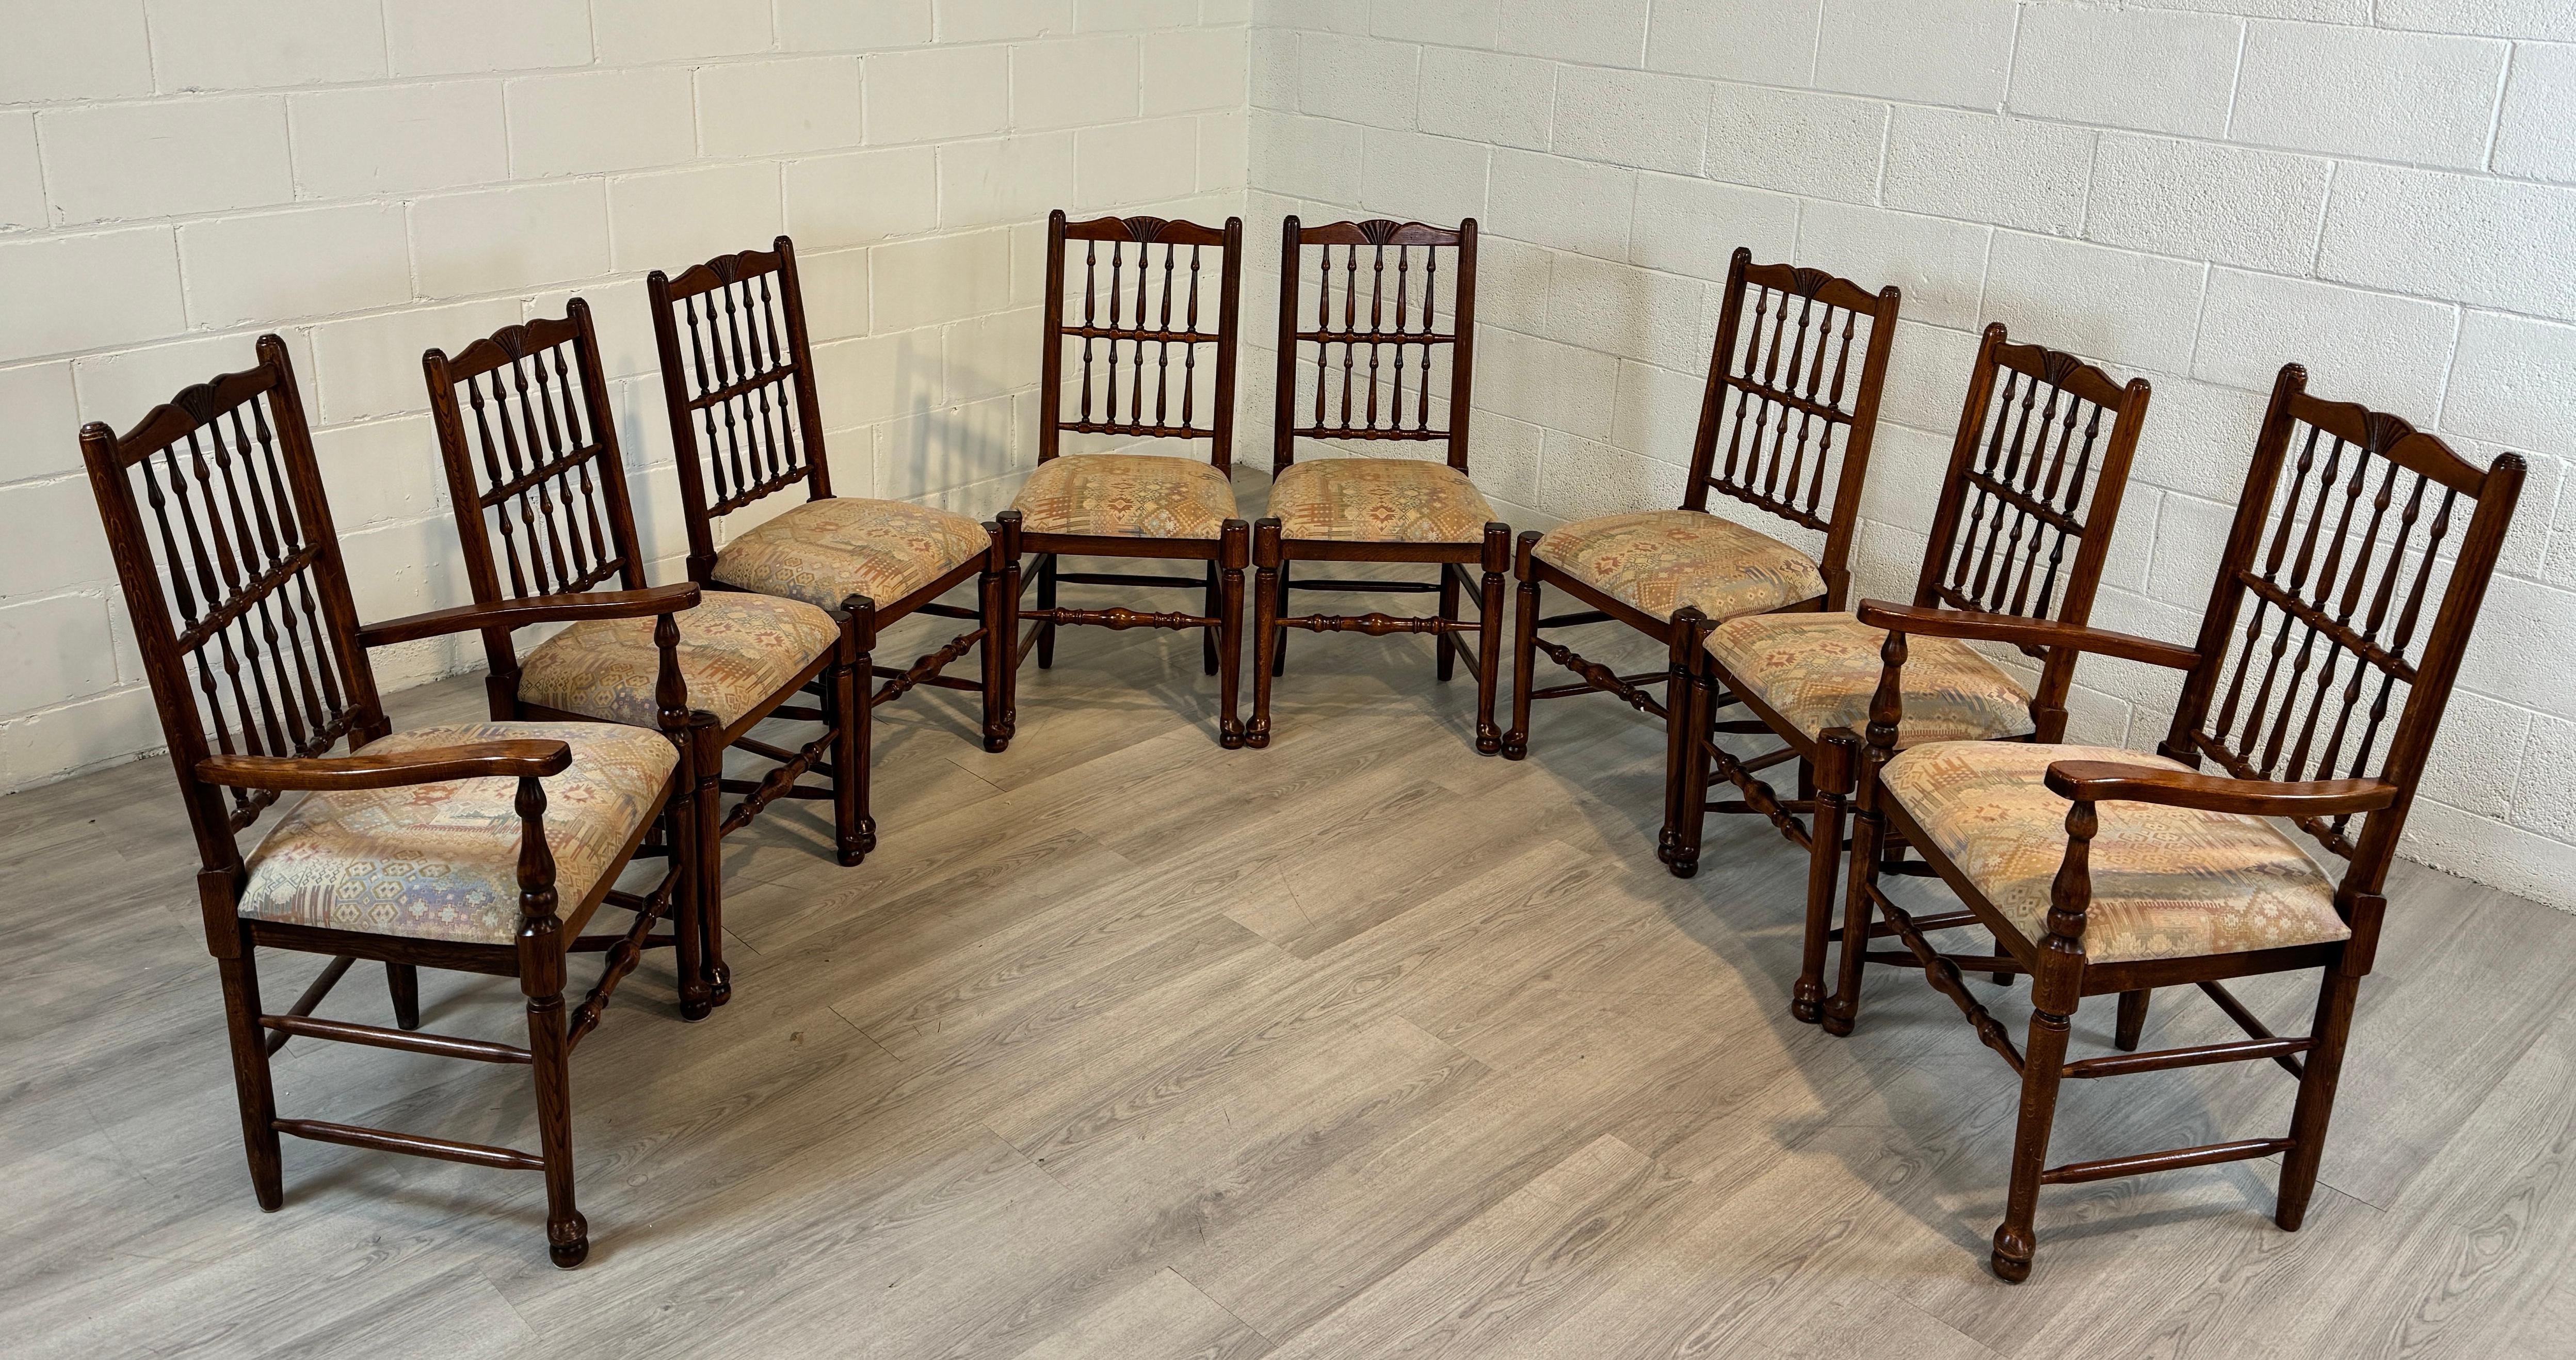 Ein hochwertiger Satz englischer Eichenstühle mit Spindelrücken.  Das Set besteht aus zwei Sesseln mit Armlehnen und sechs Sesseln ohne Armlehnen, um eine gut proportionierte Anordnung um Ihren Tisch zu ermöglichen.  Die Sitze sind leicht abnehmbar,